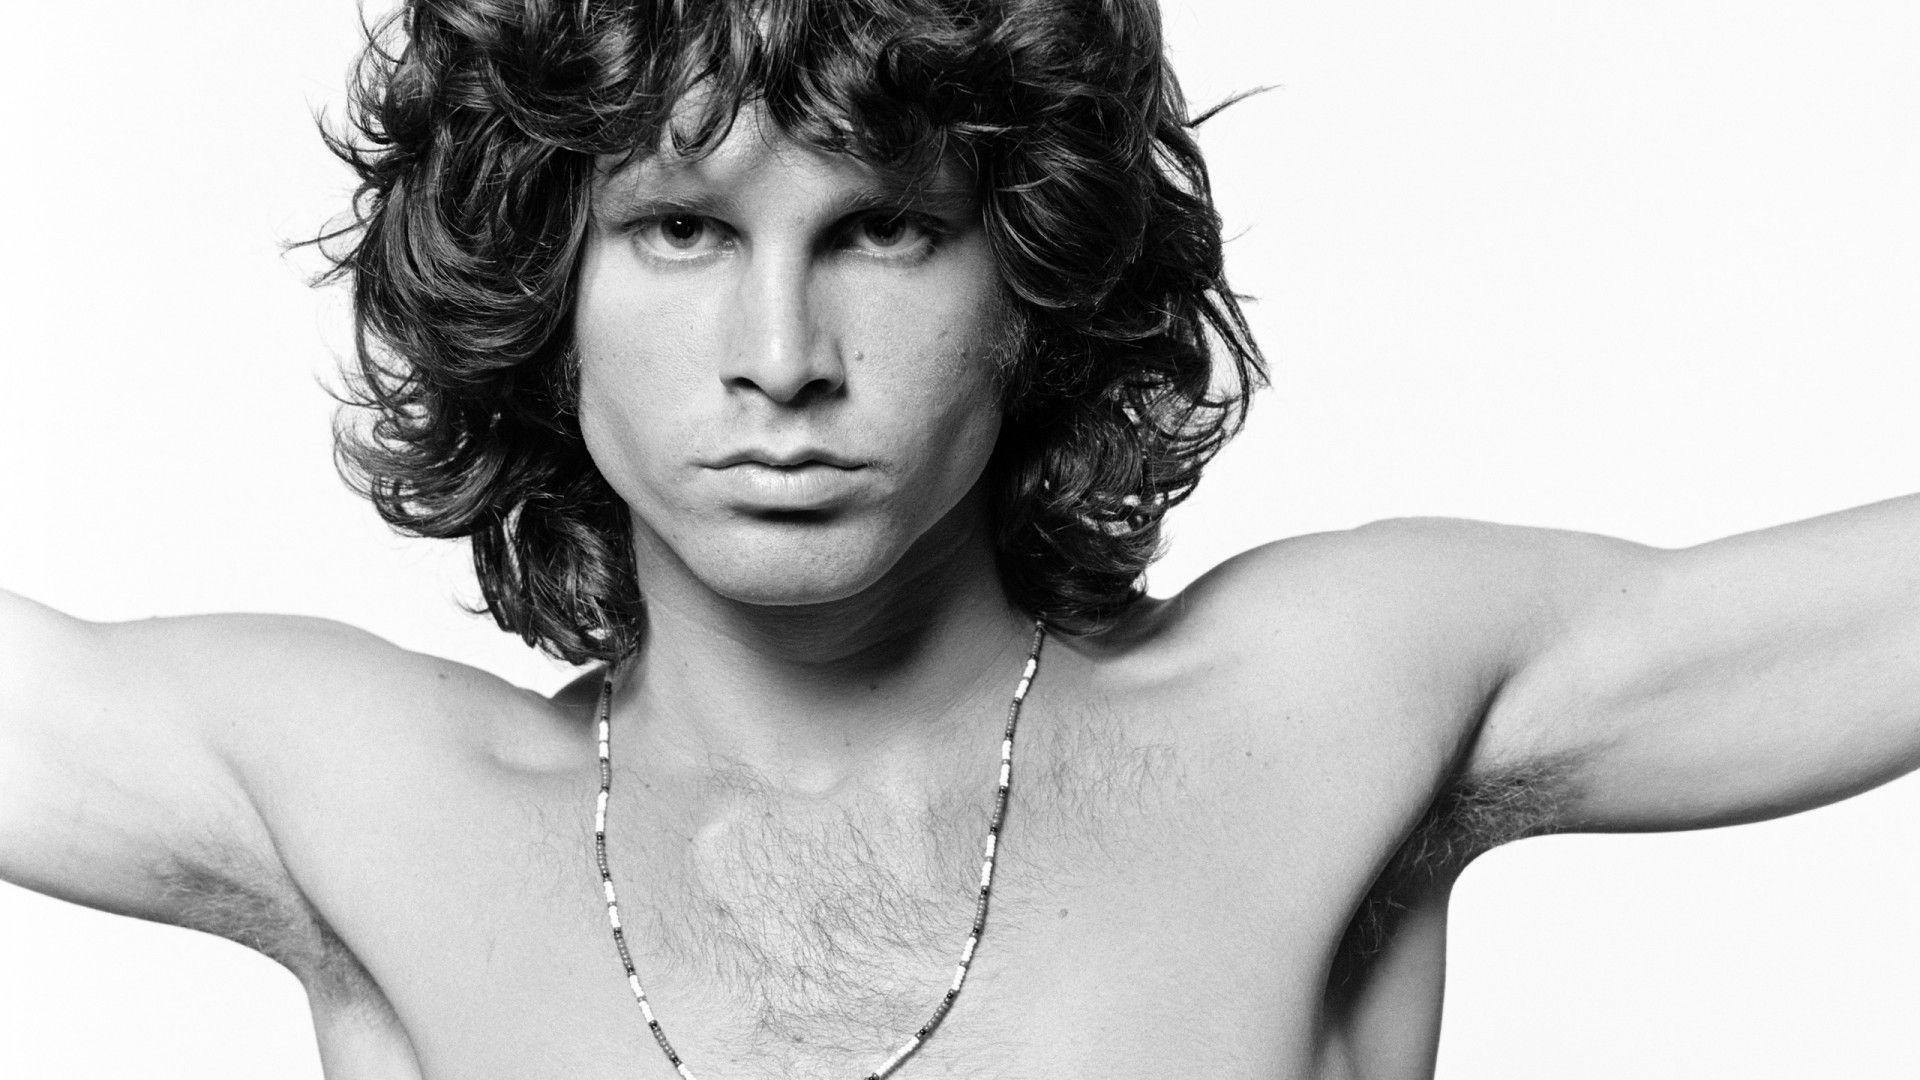 Jim Morrison famous picture HD. Music desktop wallpaper